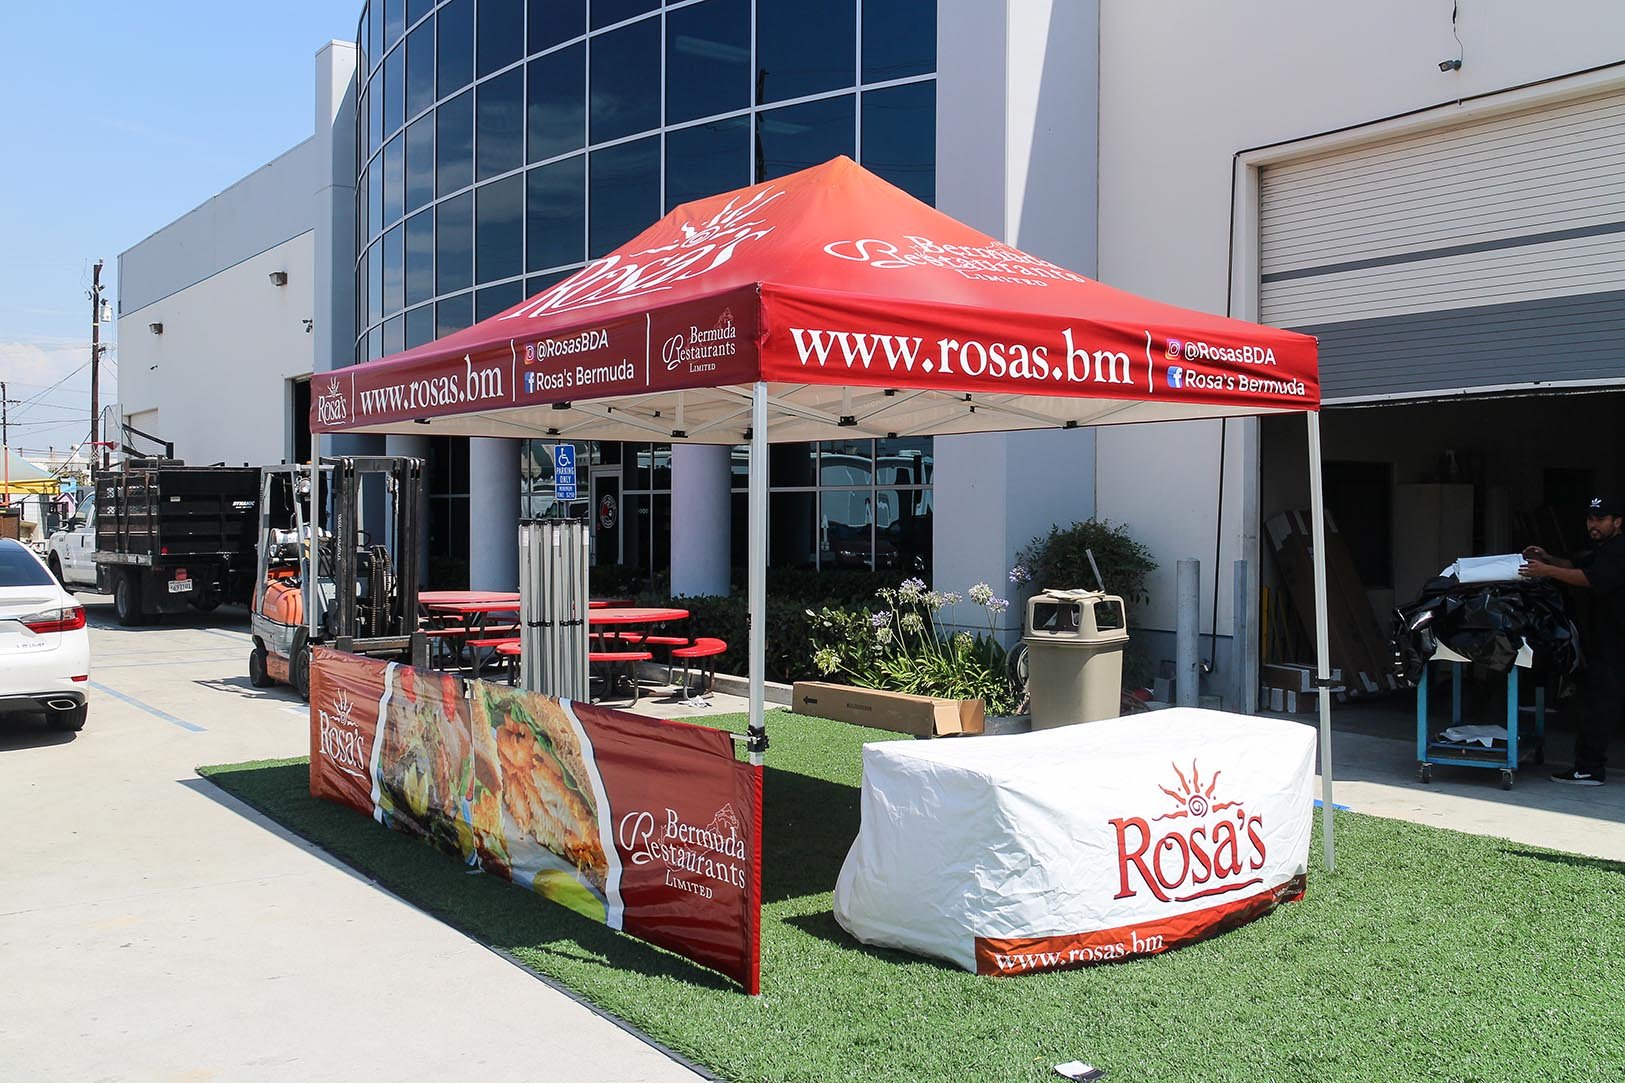 rosas-restaurant-pop-up-canopy